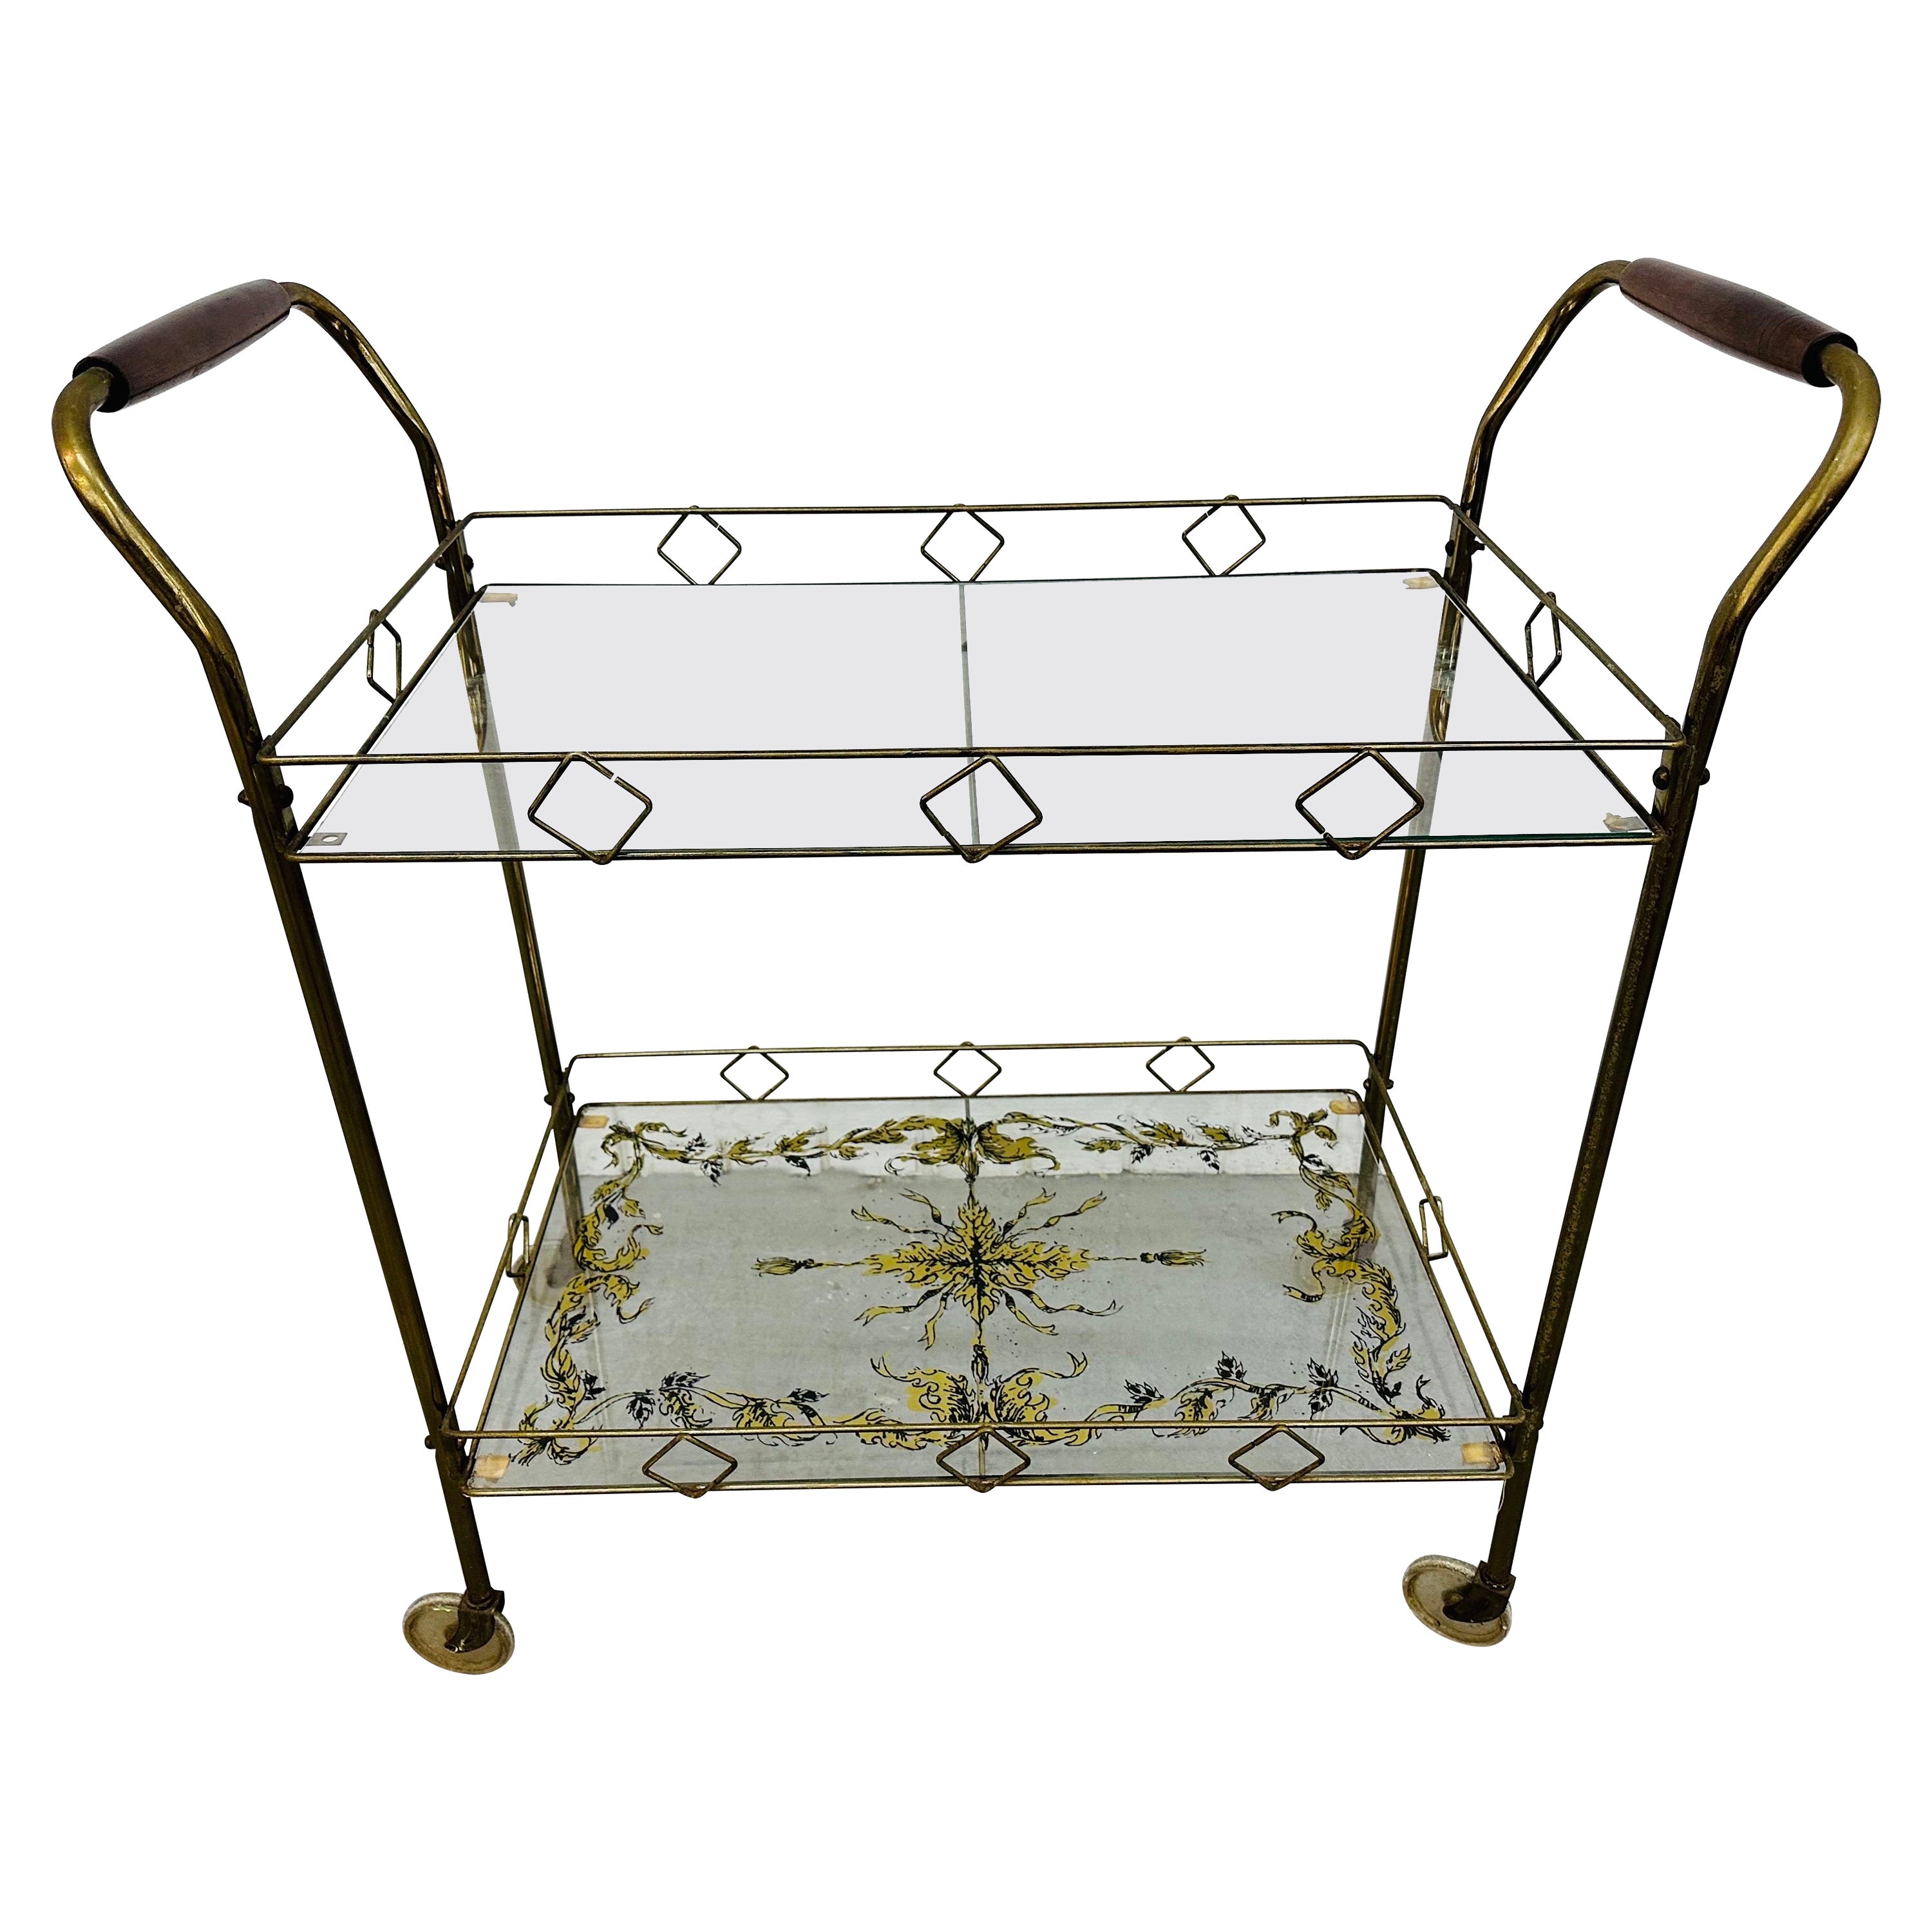 Mid-Century Modern Brass & Glass Bar Cart